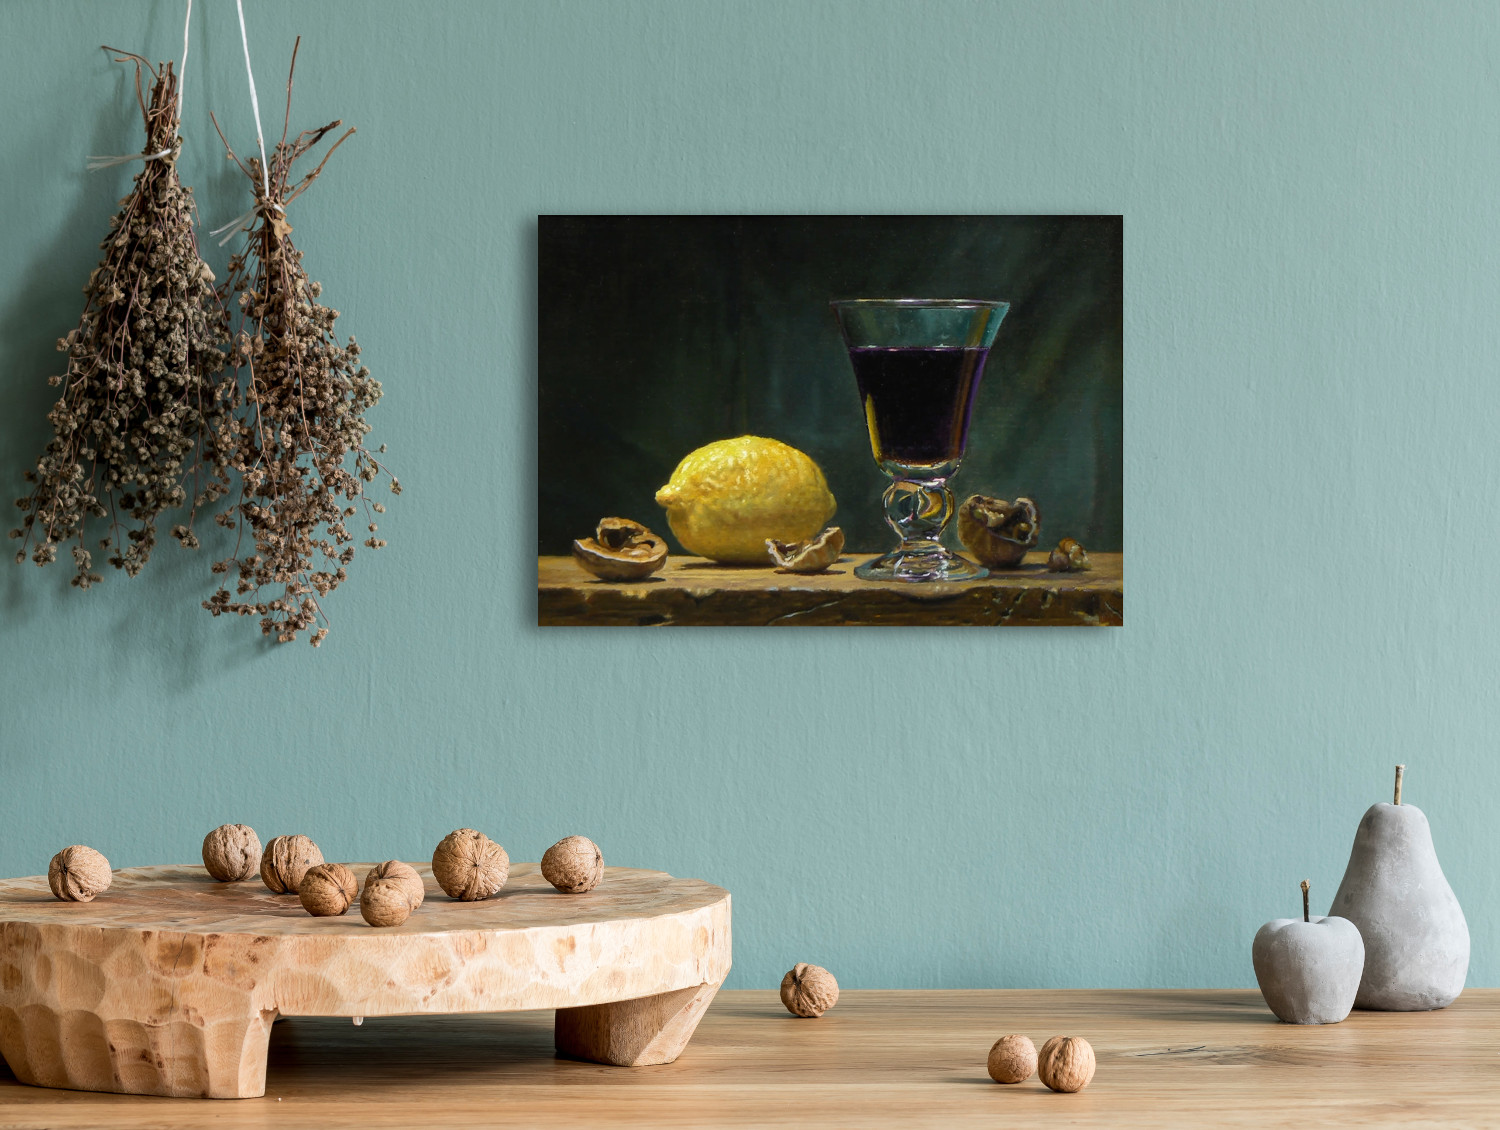 walnuts_lemon_wine-wall-print-002